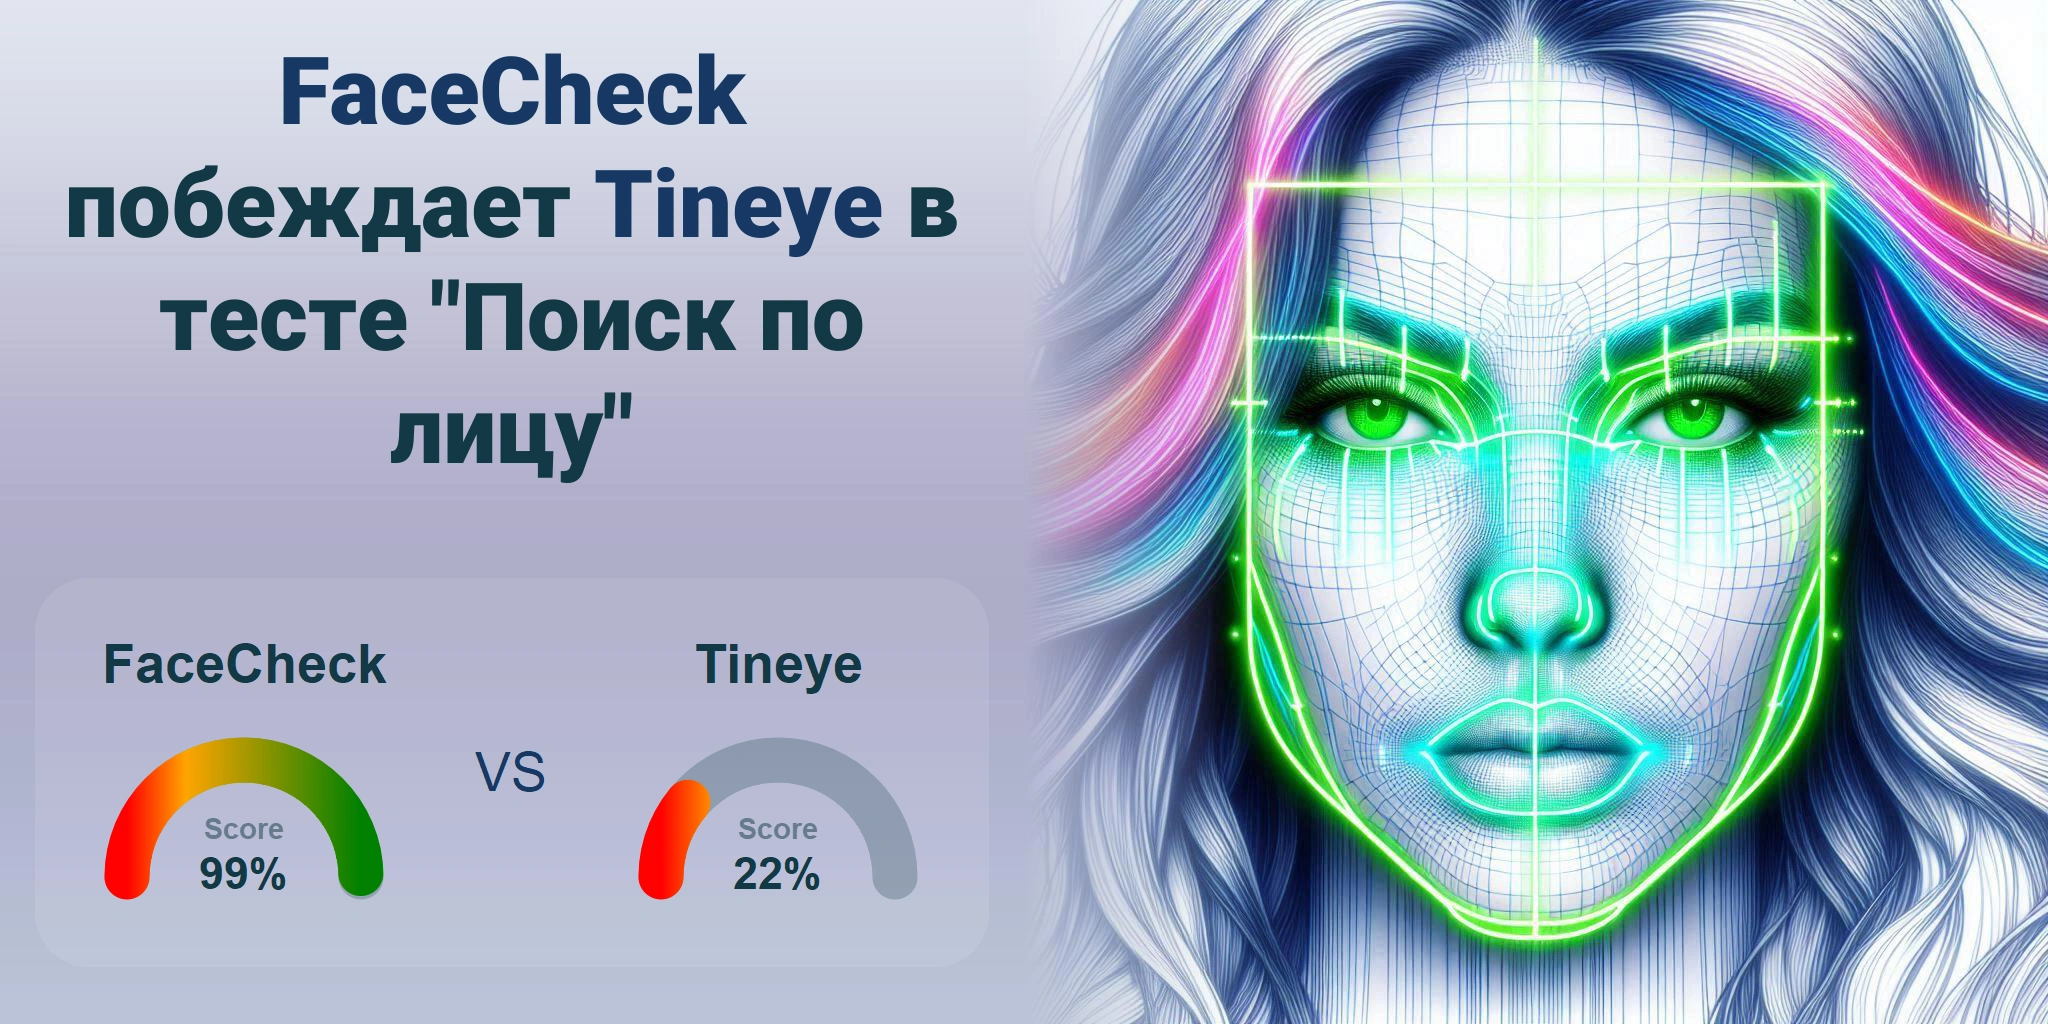 Что лучше для поиска по лицам: <br>FaceCheck или Tineye?